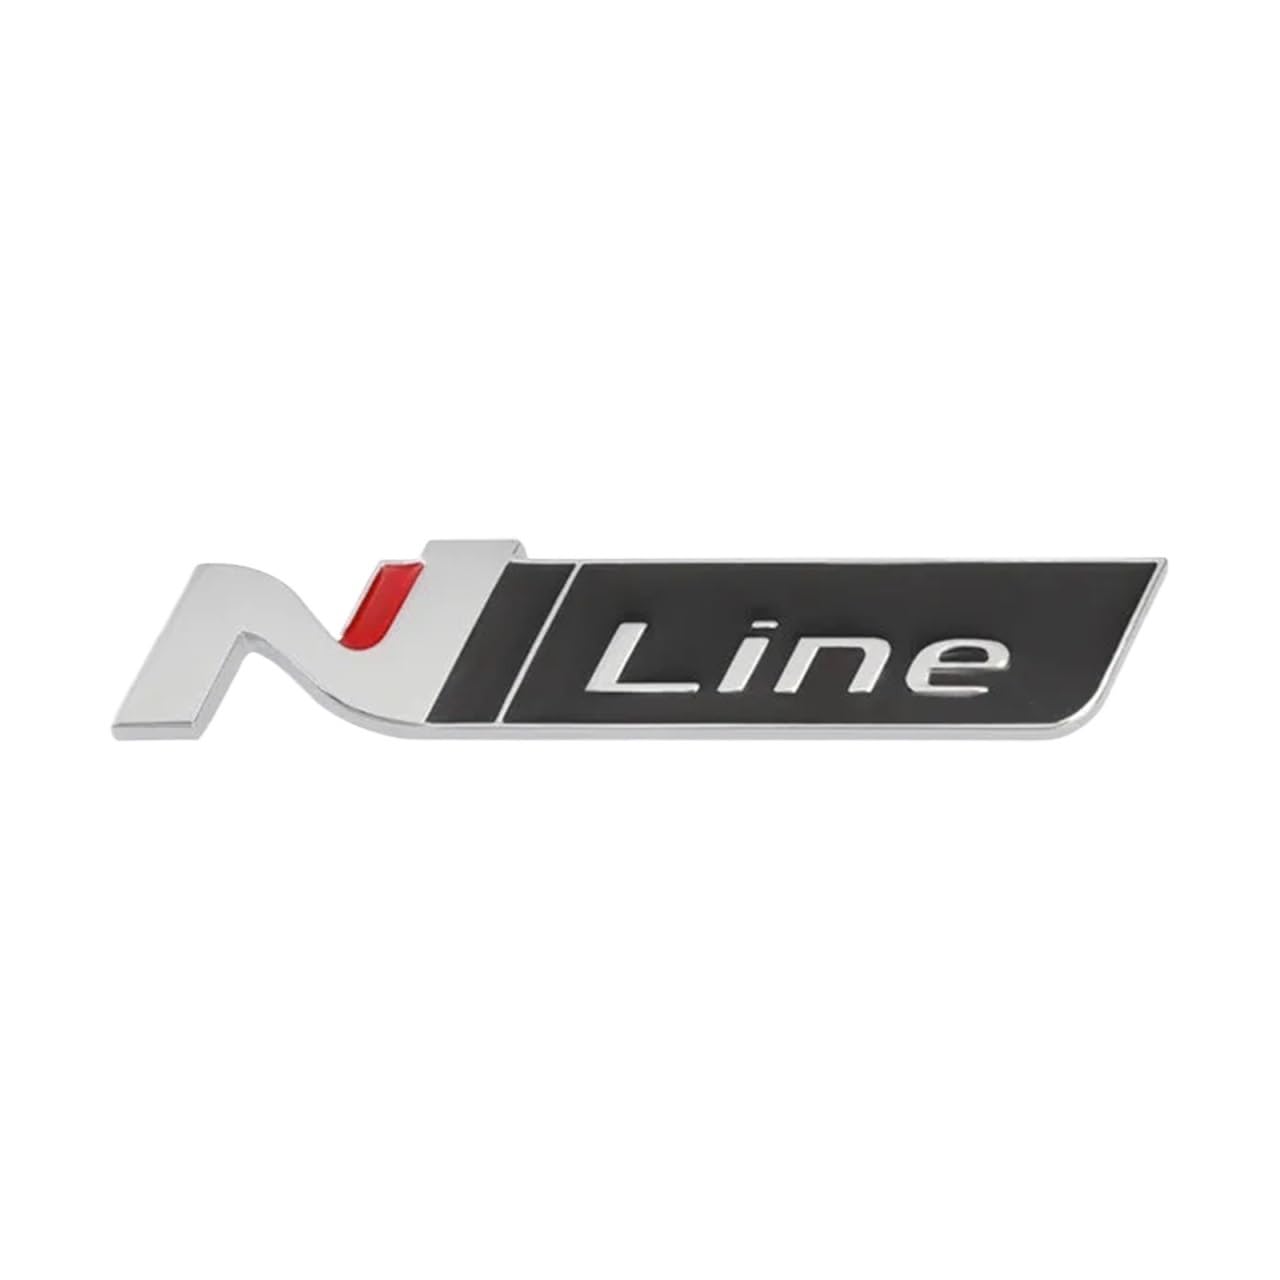 N Line Nline Abzeichen Emblem Aufkleber Frontgrill Kompatibel mit Sonata I30 2021 Elantra Veloster Kona Tucson N Line StylingCar Aufkleber(Silver) von NRUOS